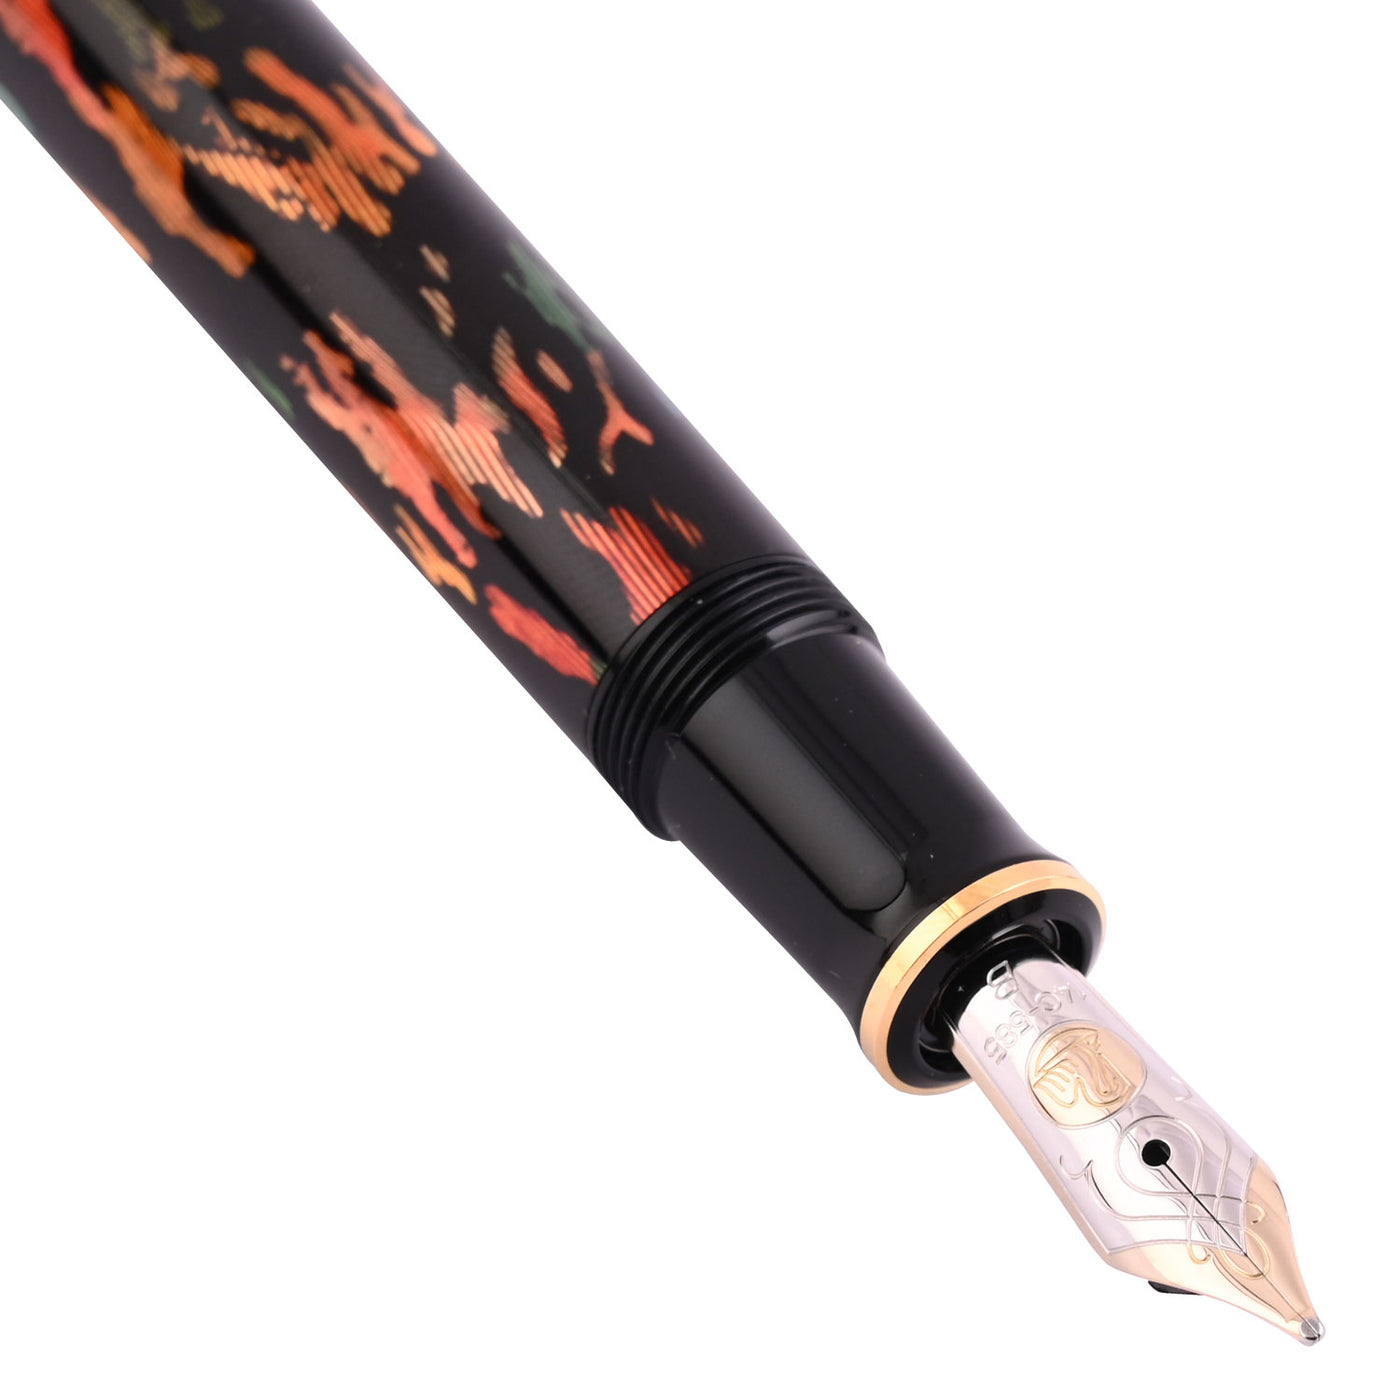 Pelikan M600 Art Collection Fountain Pen - Glauco Cambon (Special Edition) 2